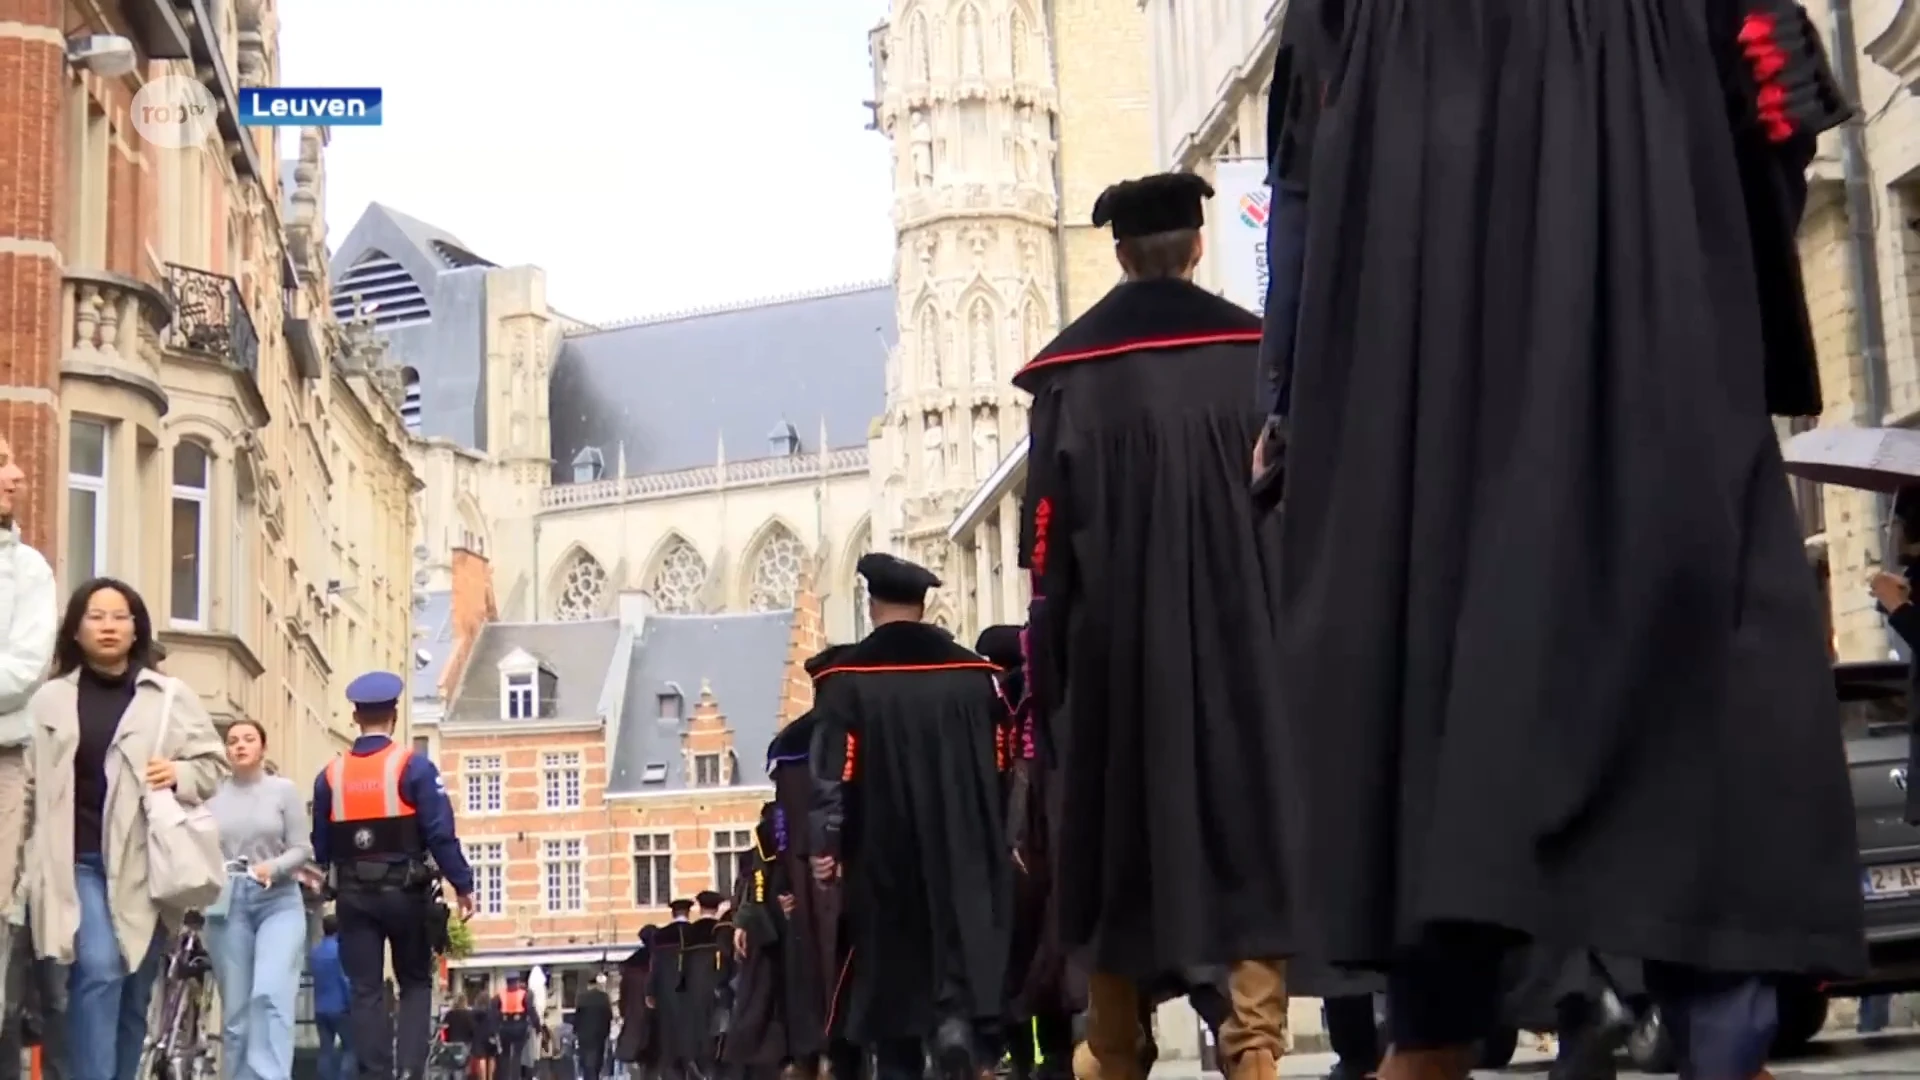 Stoet der Togati trekt traditioneel door Leuven om start academiejaar aan te kondigen